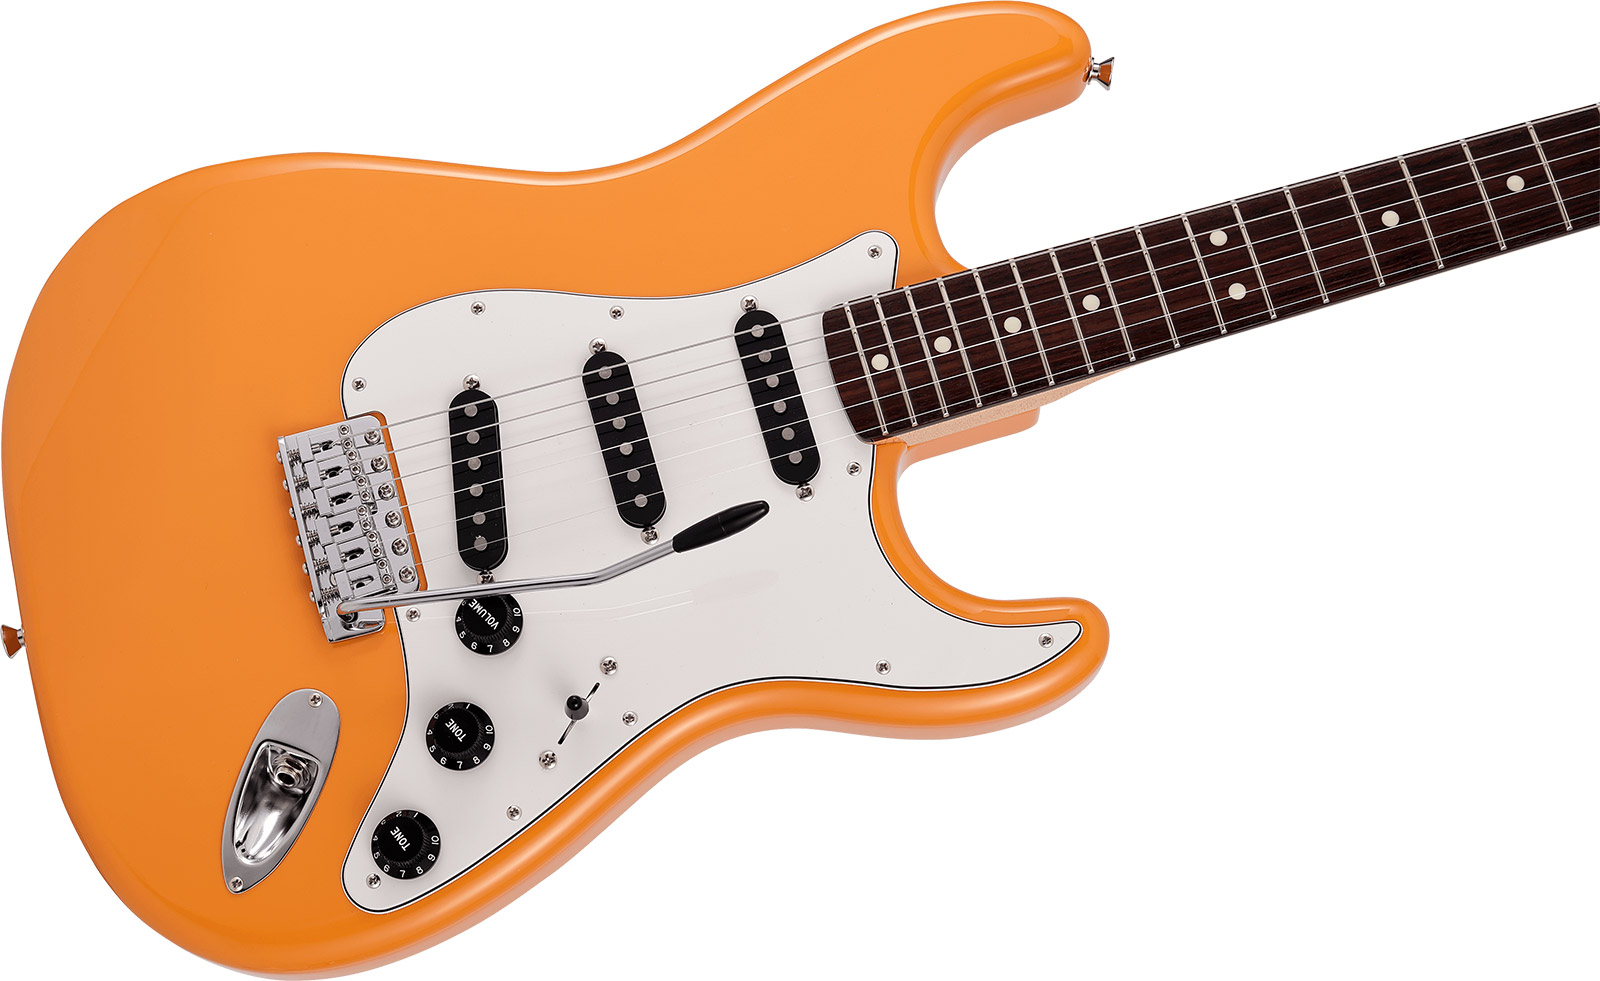 Fender Strat International Color Ltd Jap 3s Trem Rw - Capri Orange - E-Gitarre in Str-Form - Variation 2